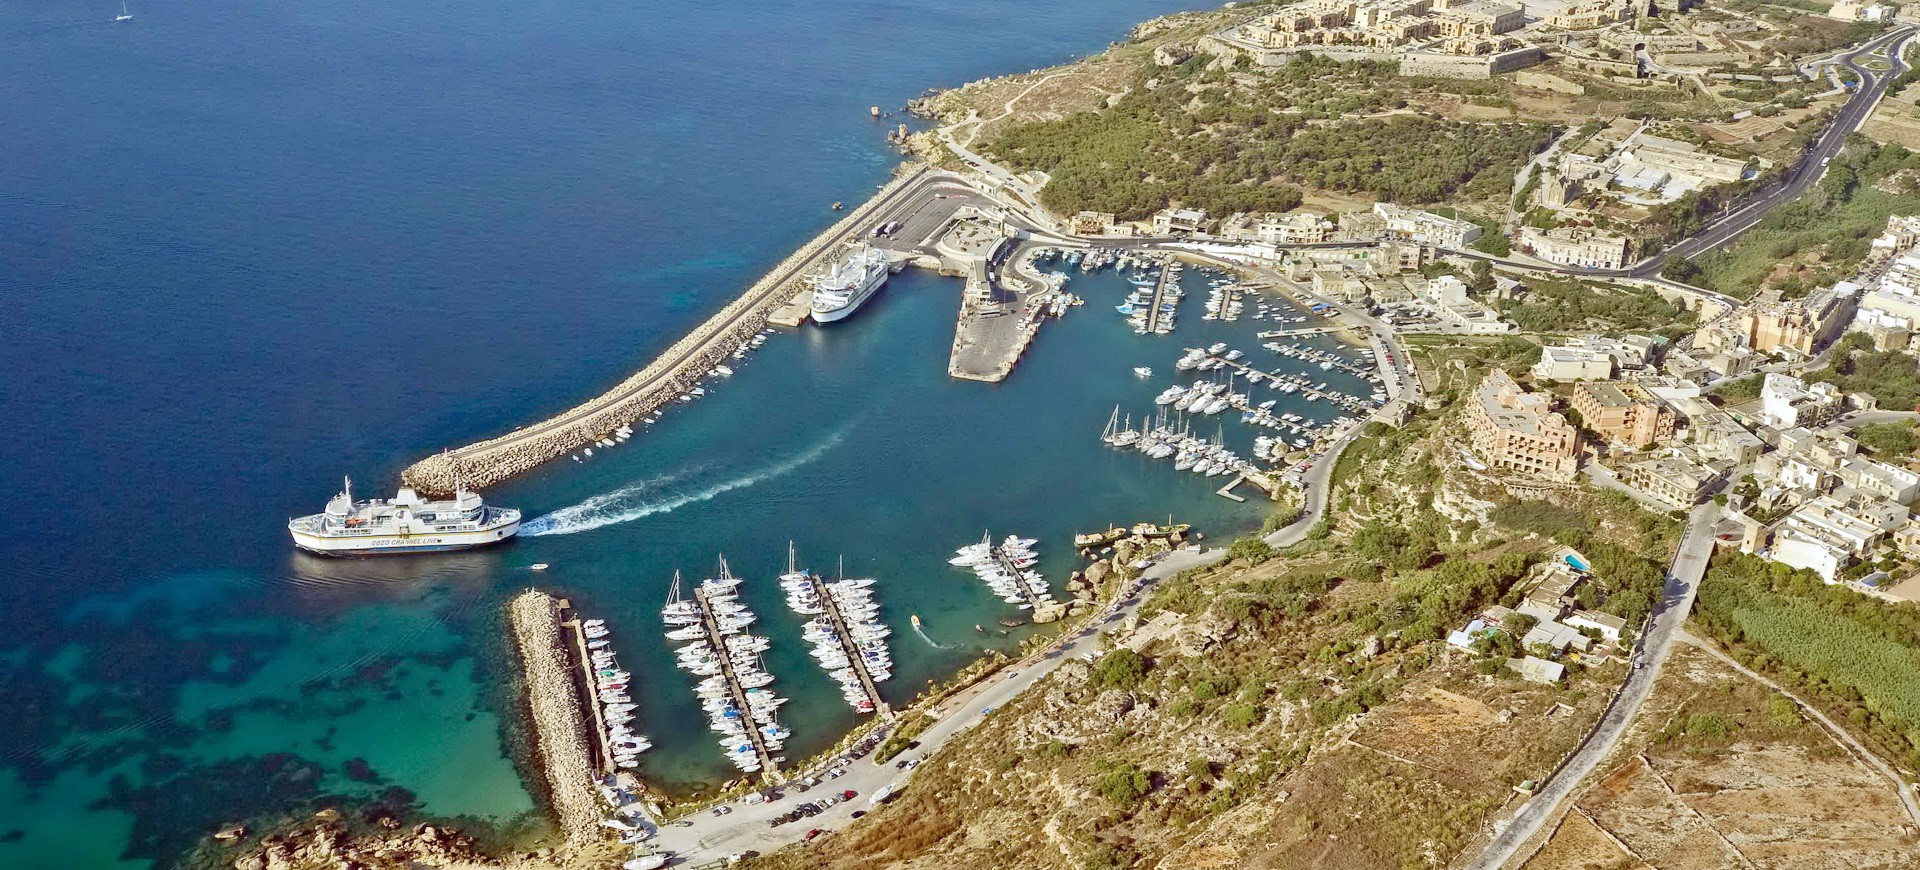 Malte Ile de Gozo Port de Mgarr vue aérienne